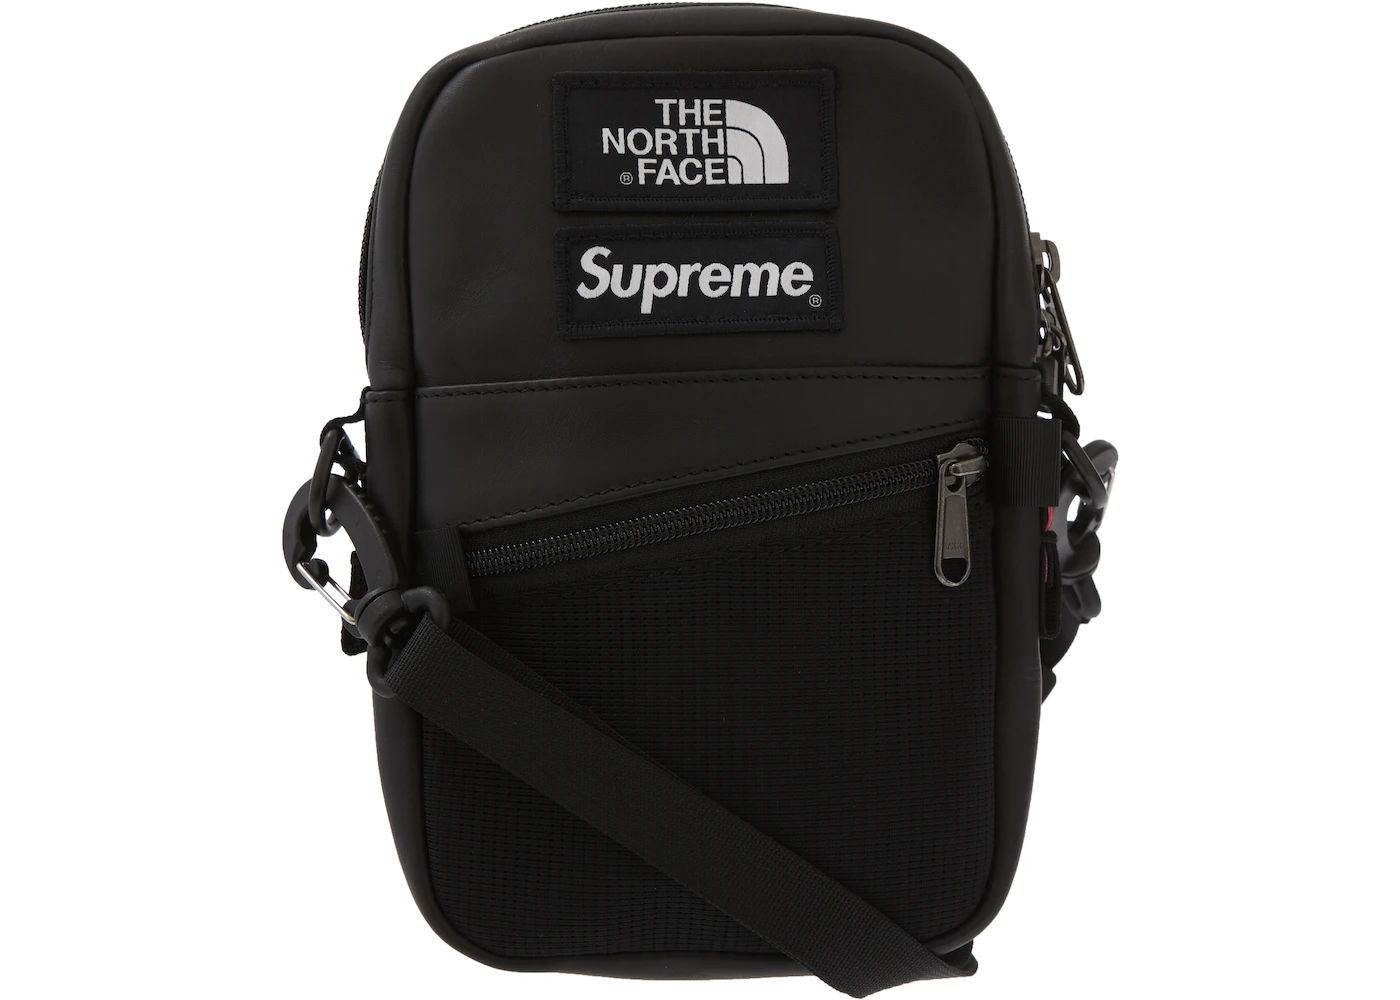 Supreme The North Face Leather Shoulder Bag Black